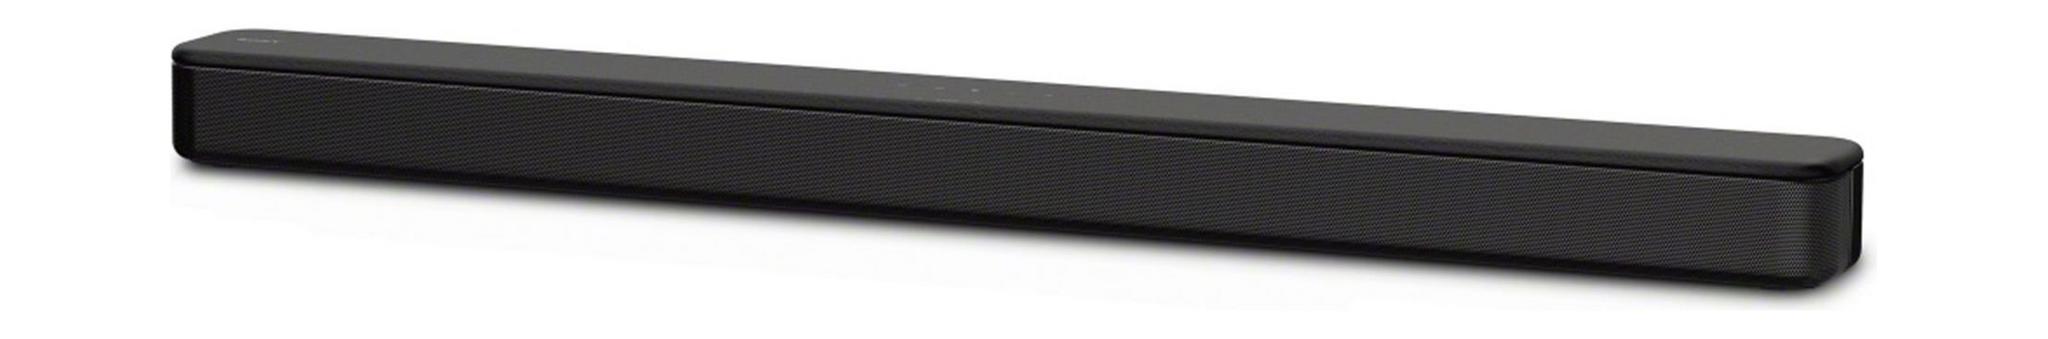 تلفزيون تي سي إل الذكي ٦٥ بوصة فائق الوضوح إل إي دي - (L65P65US) + ساوند بار بقوة ١٢٠ واط من سوني (HT-S100F) - أسود